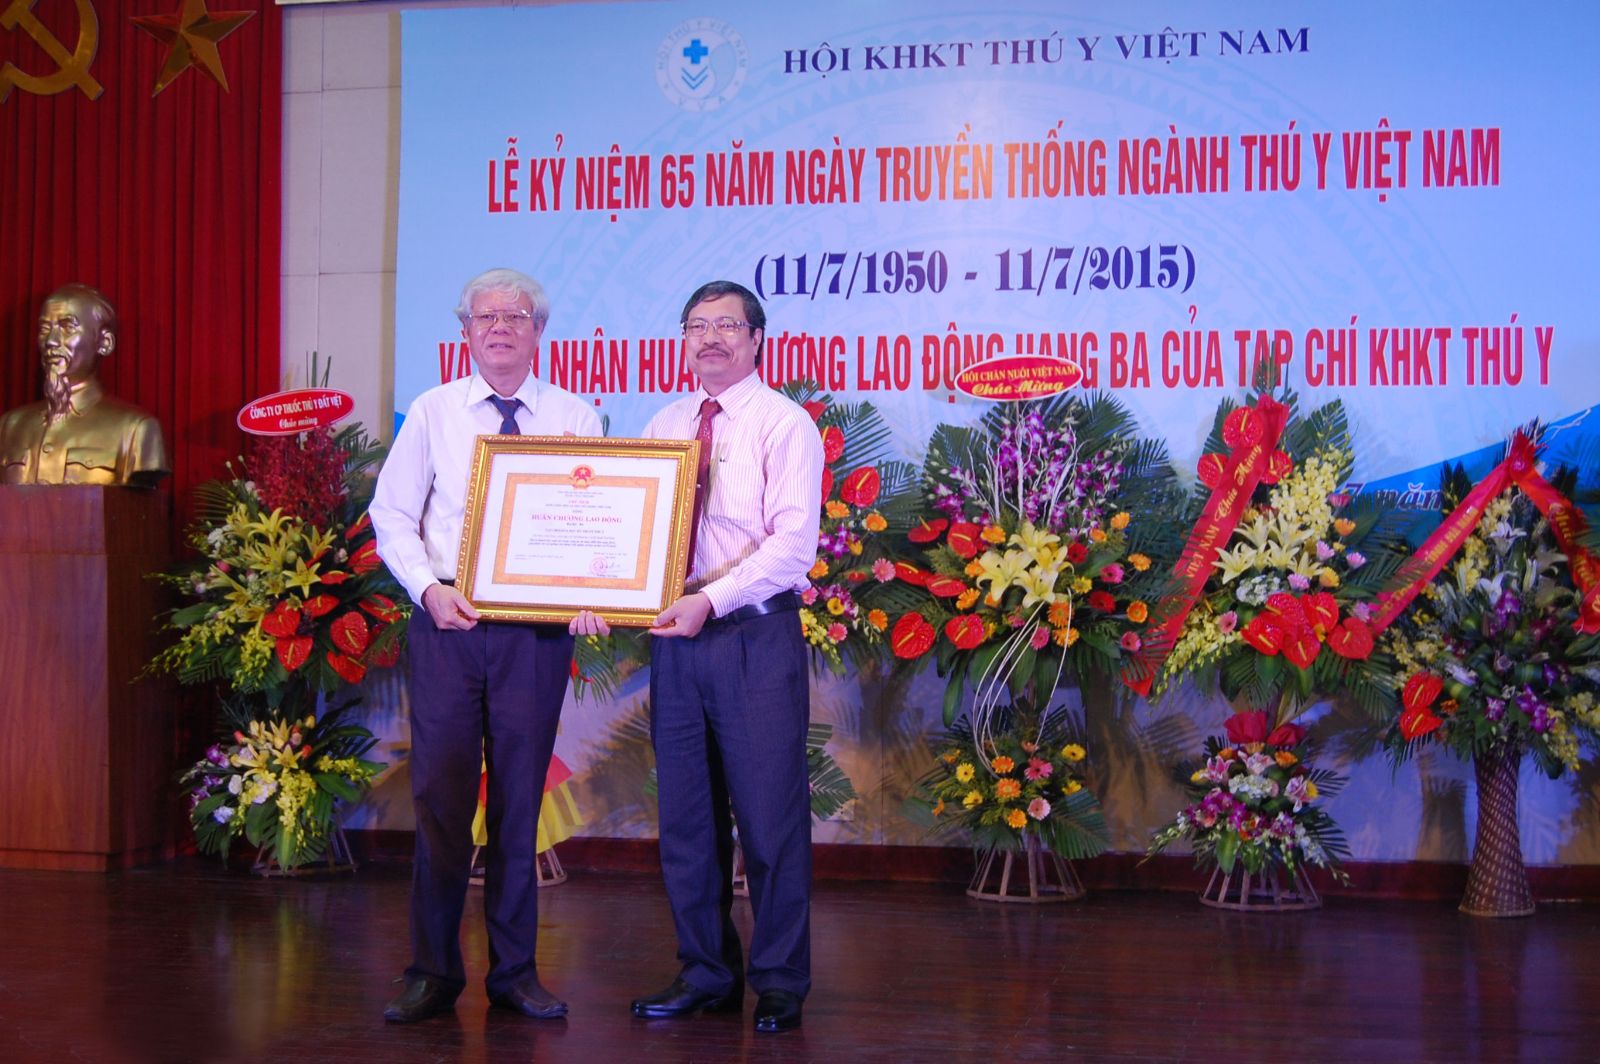 Hanvet- Nhà tài trợ chính cho lễ kỷ niệm 65 năm ngày truyền thống Ngành Thú y Việt Nam (11/7/1950–11/7/2015) và đón nhận Huân chương Lao động hạng ba của Tạp chí KHKT thú y